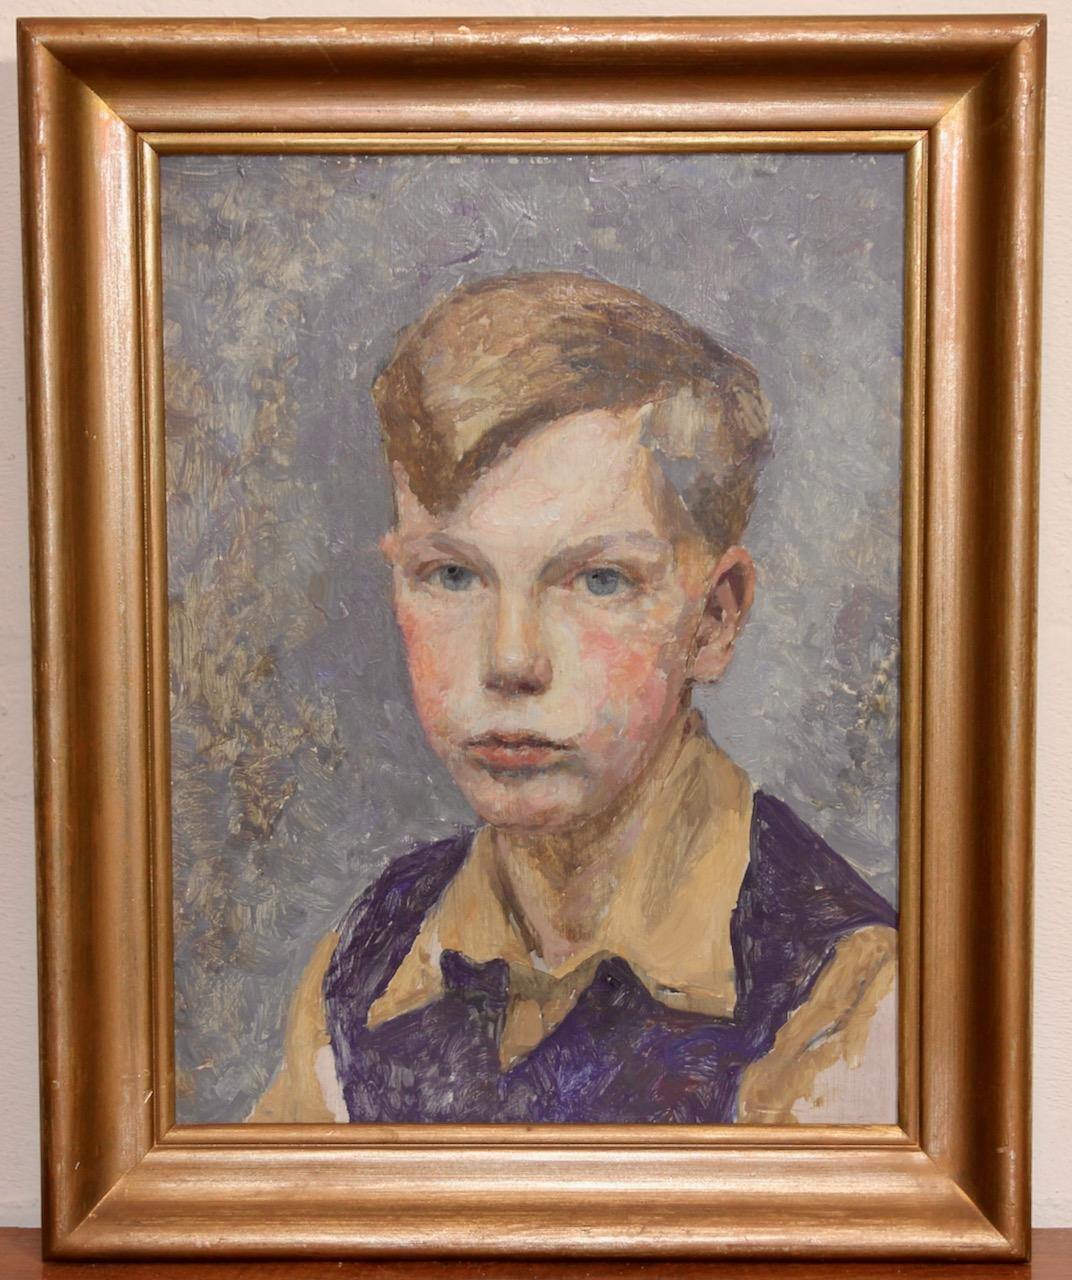 Porträt eines jungen Jungen, impressionistische Malerei. – Painting von Unknown